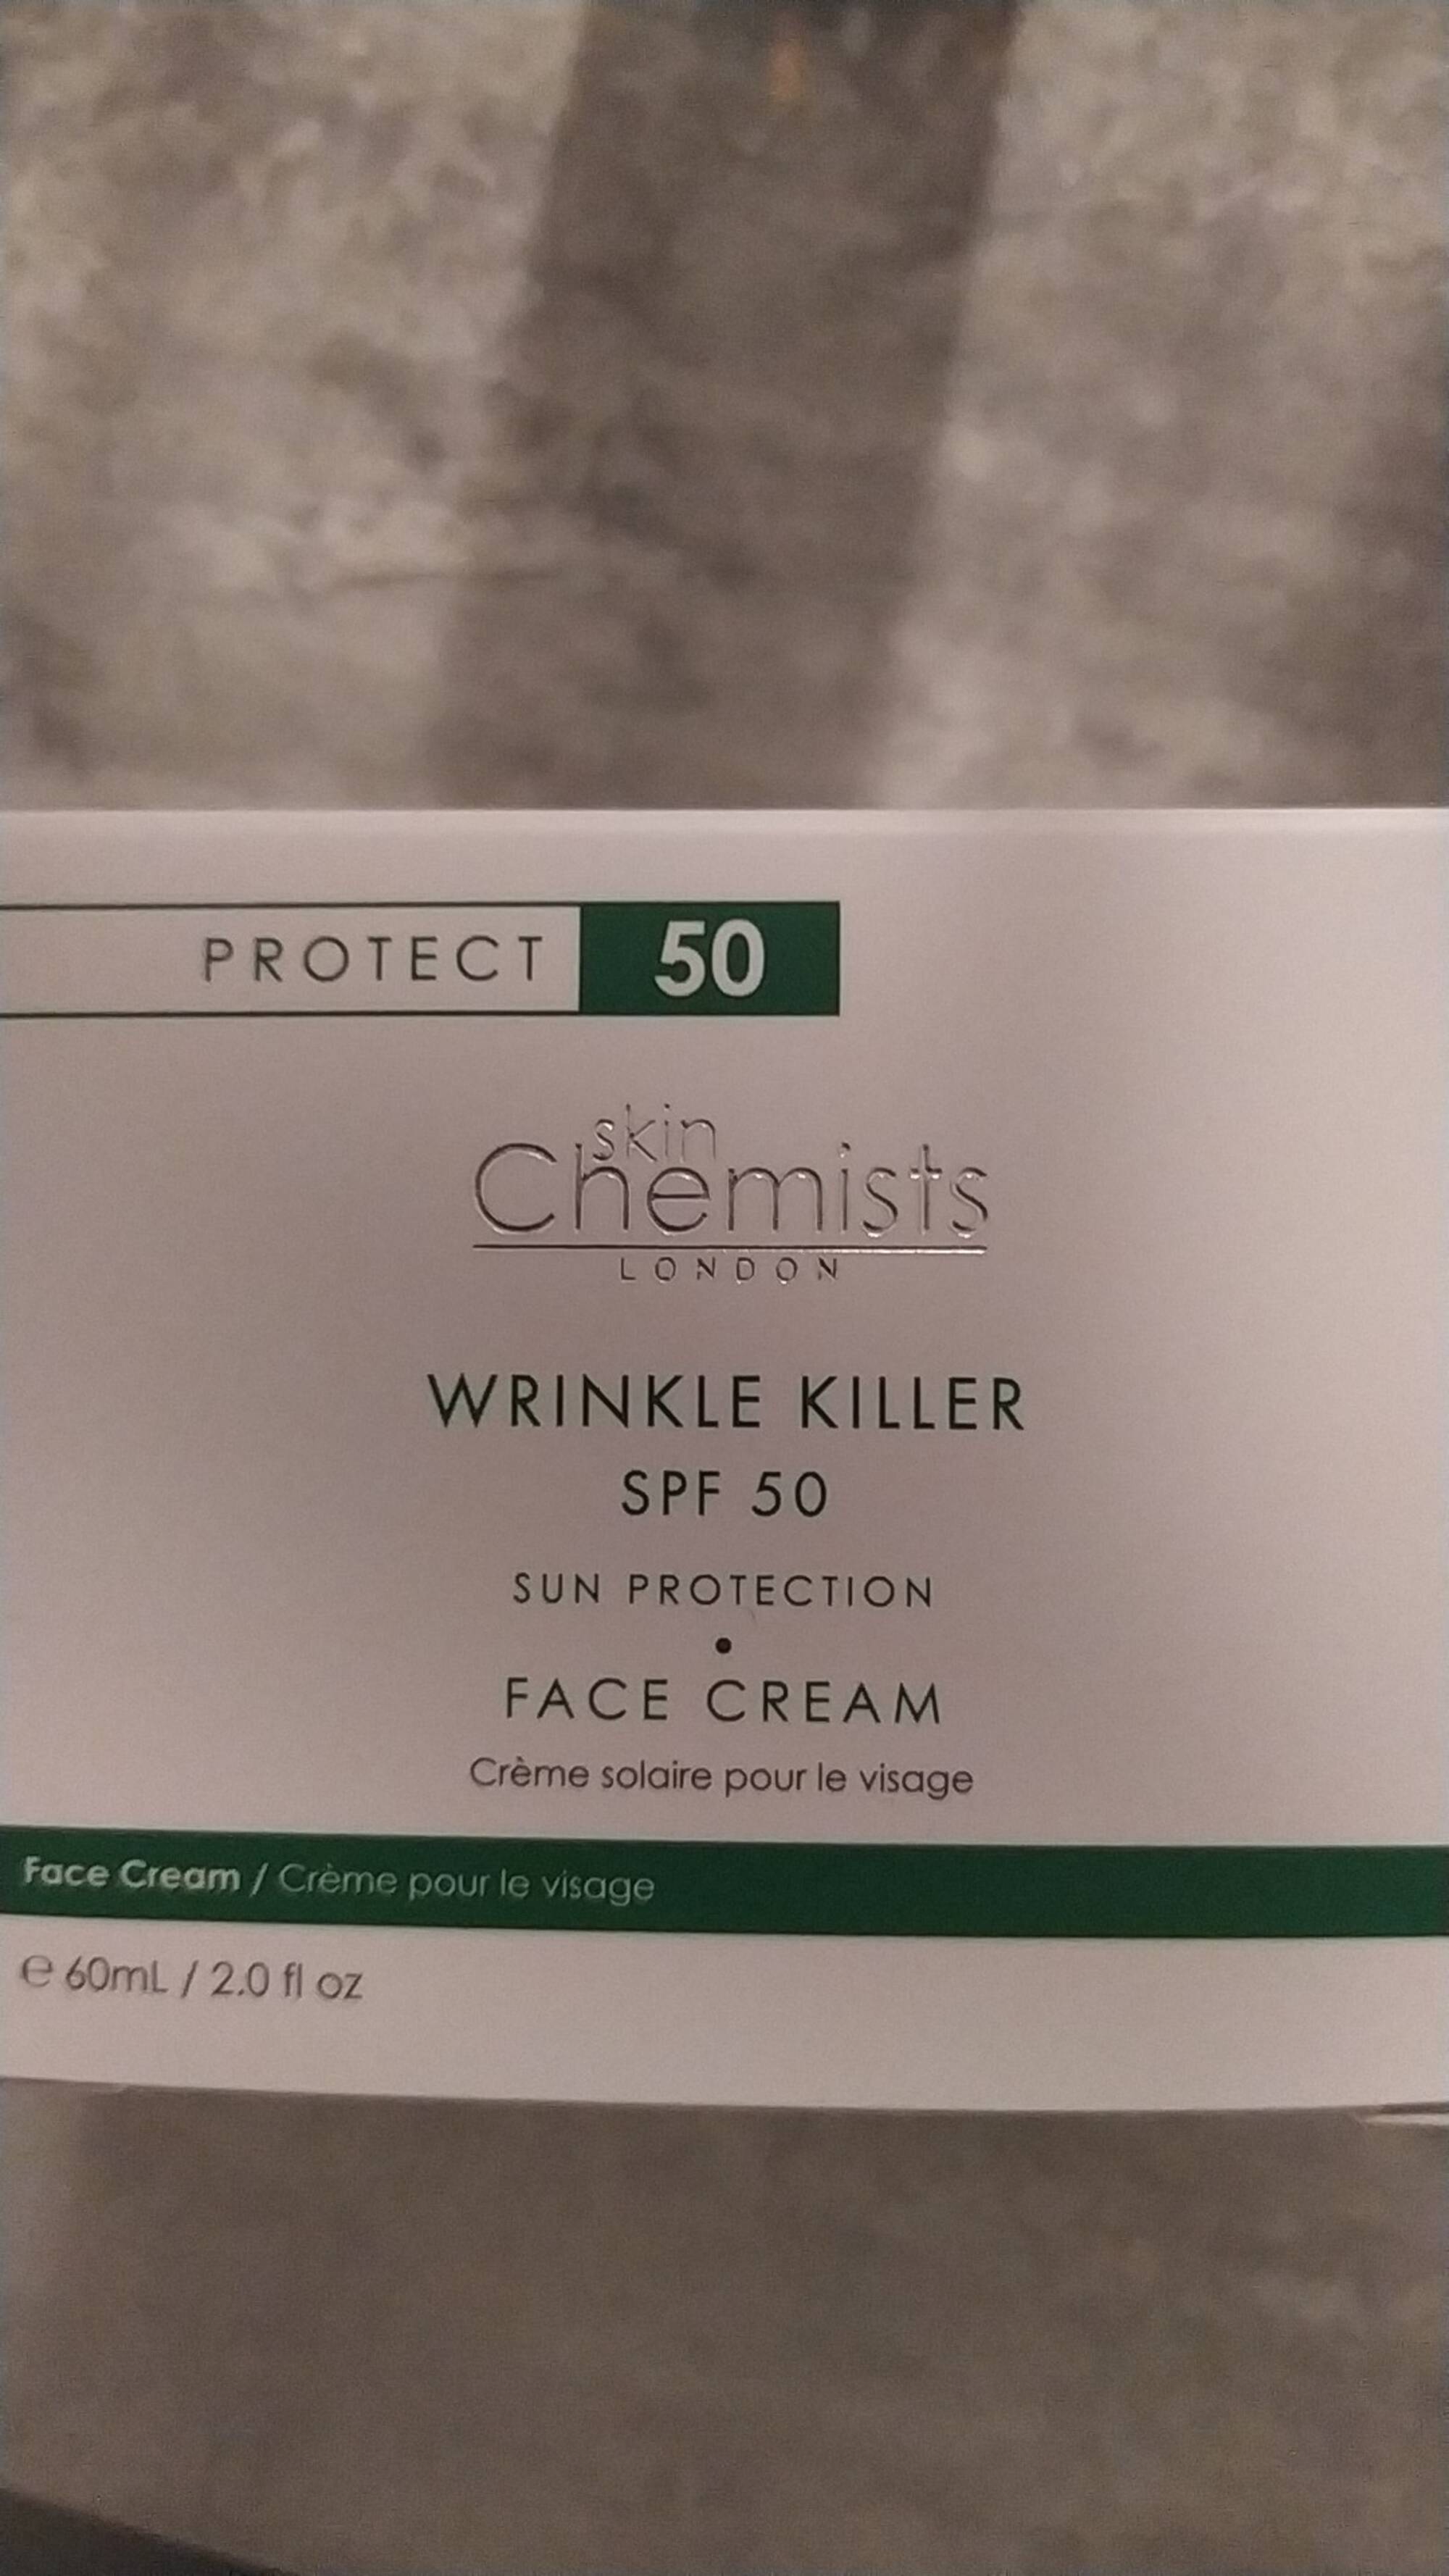 SKIN CHEMISTS - Crème solaire pour le visage